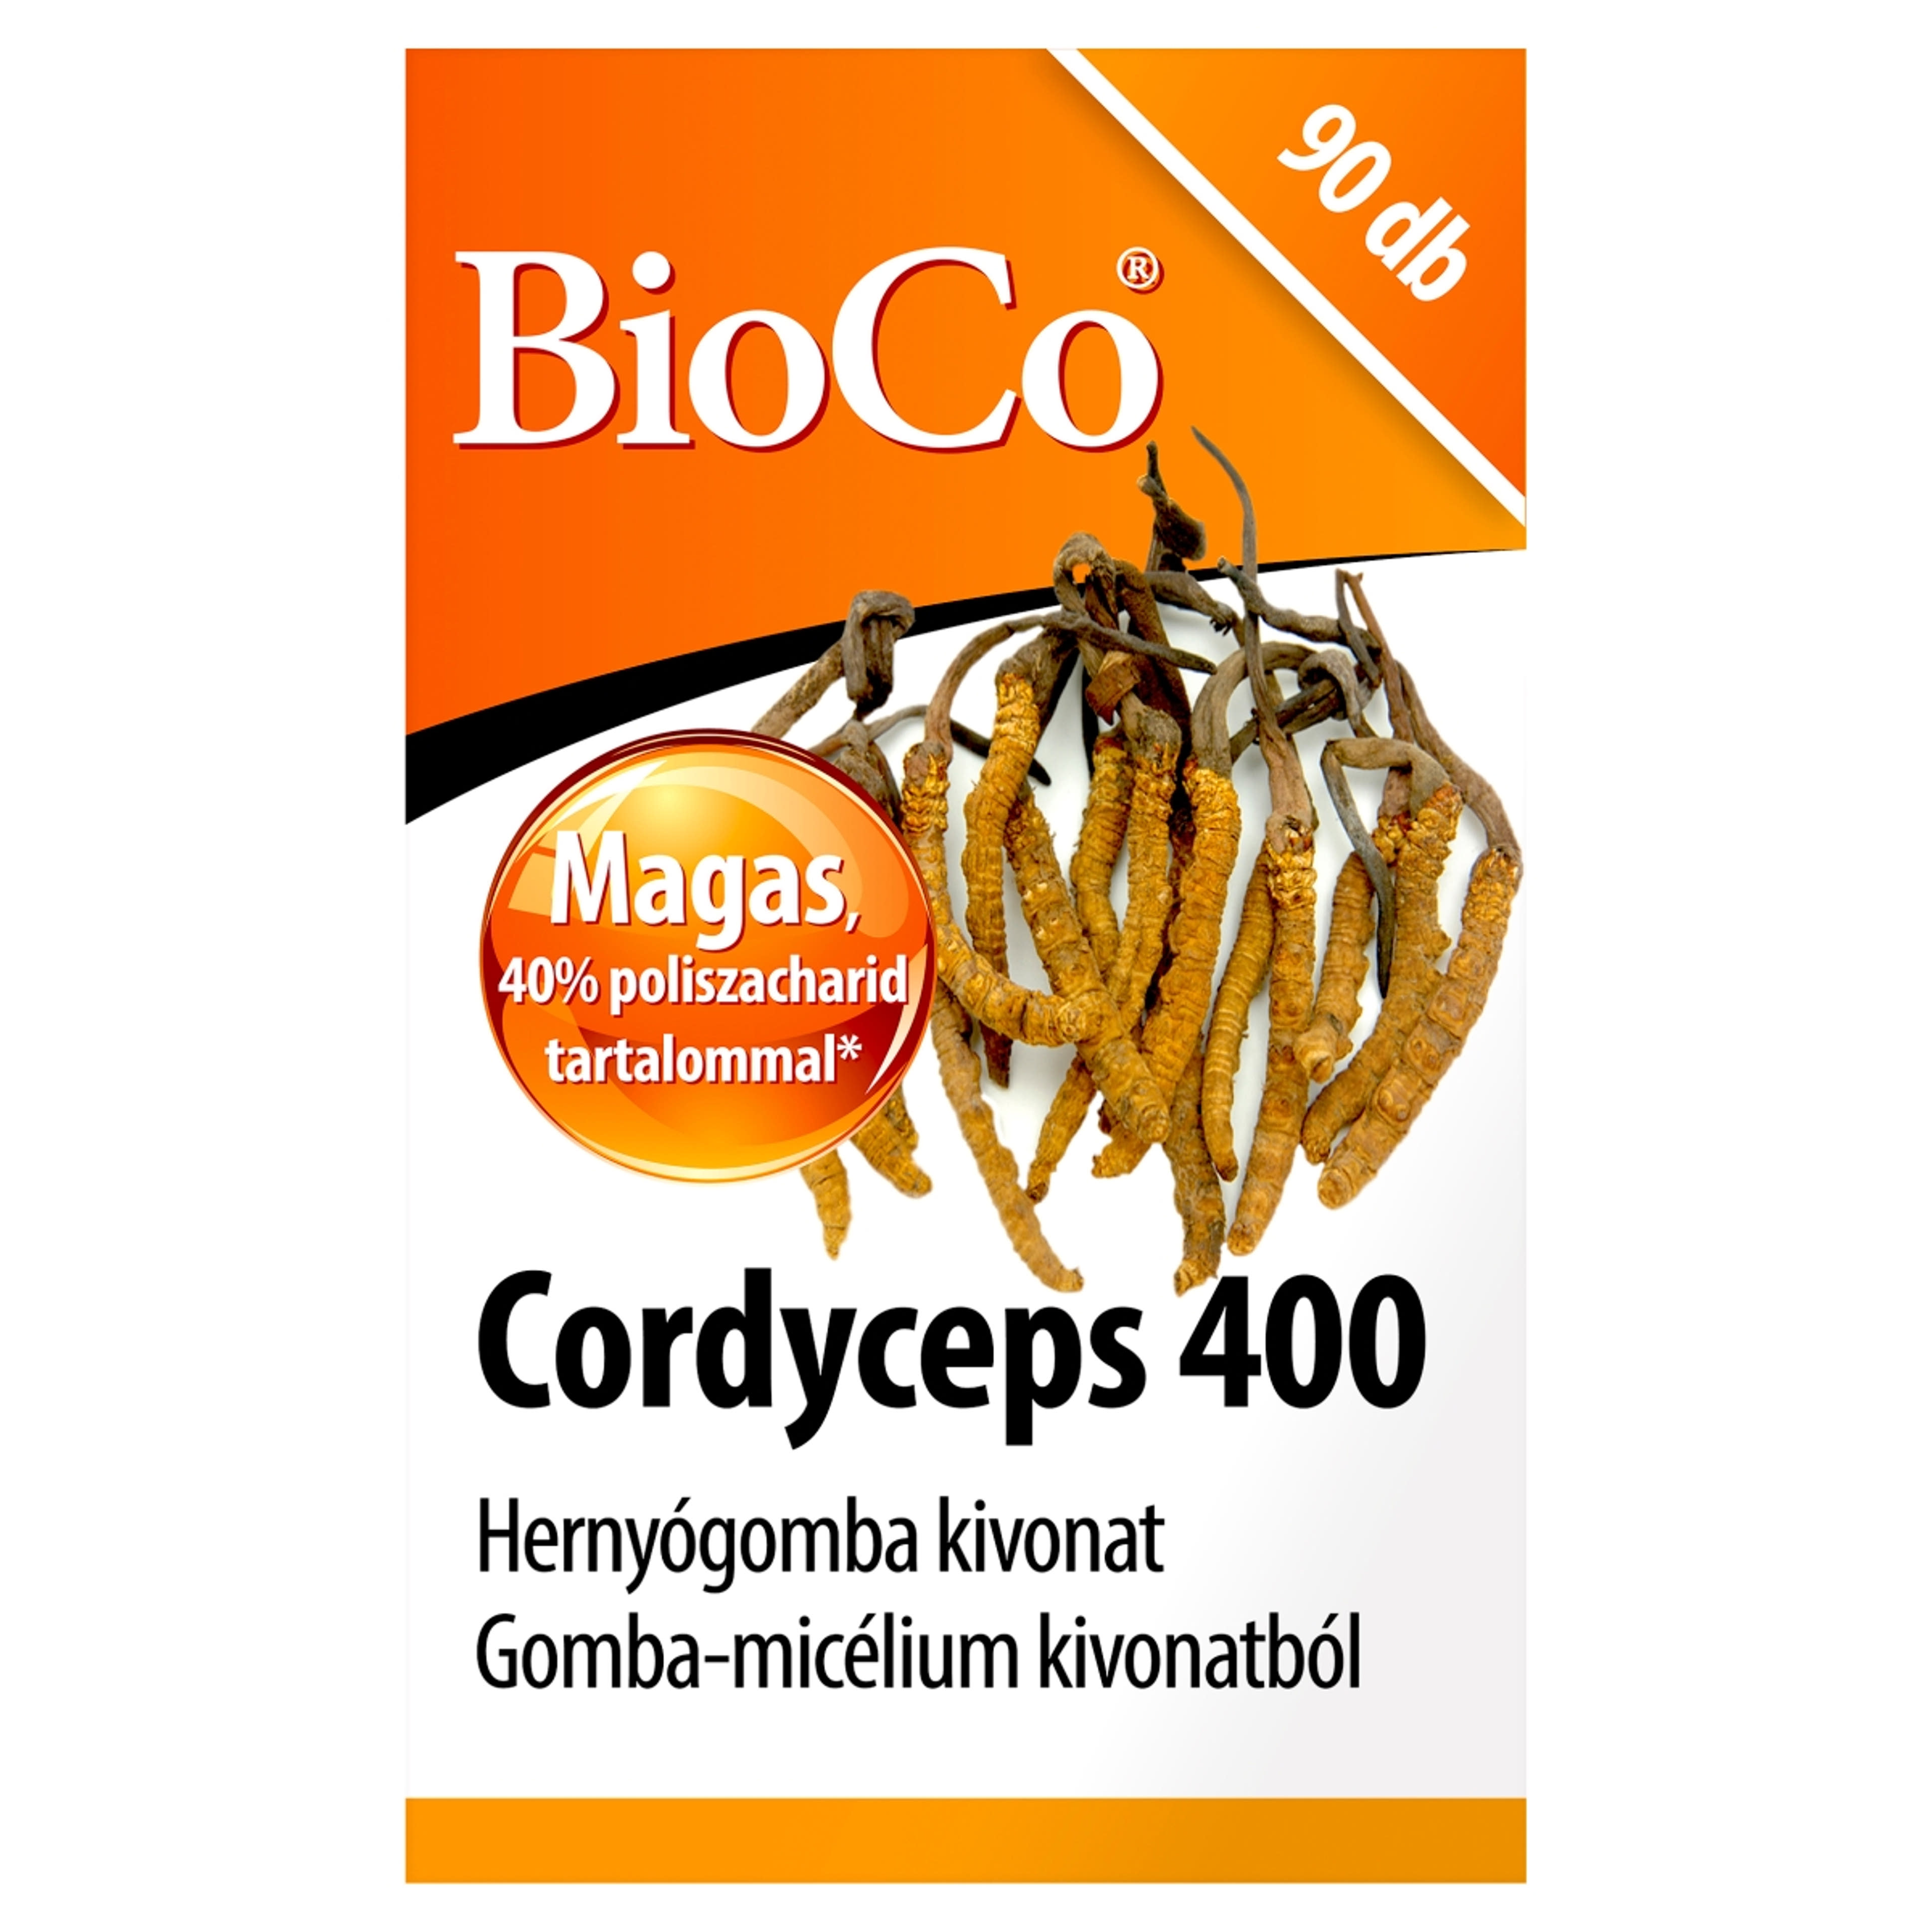 Bioco cordyceps 400 étrendkiegészítő tabletta hernyógombával - 90 db